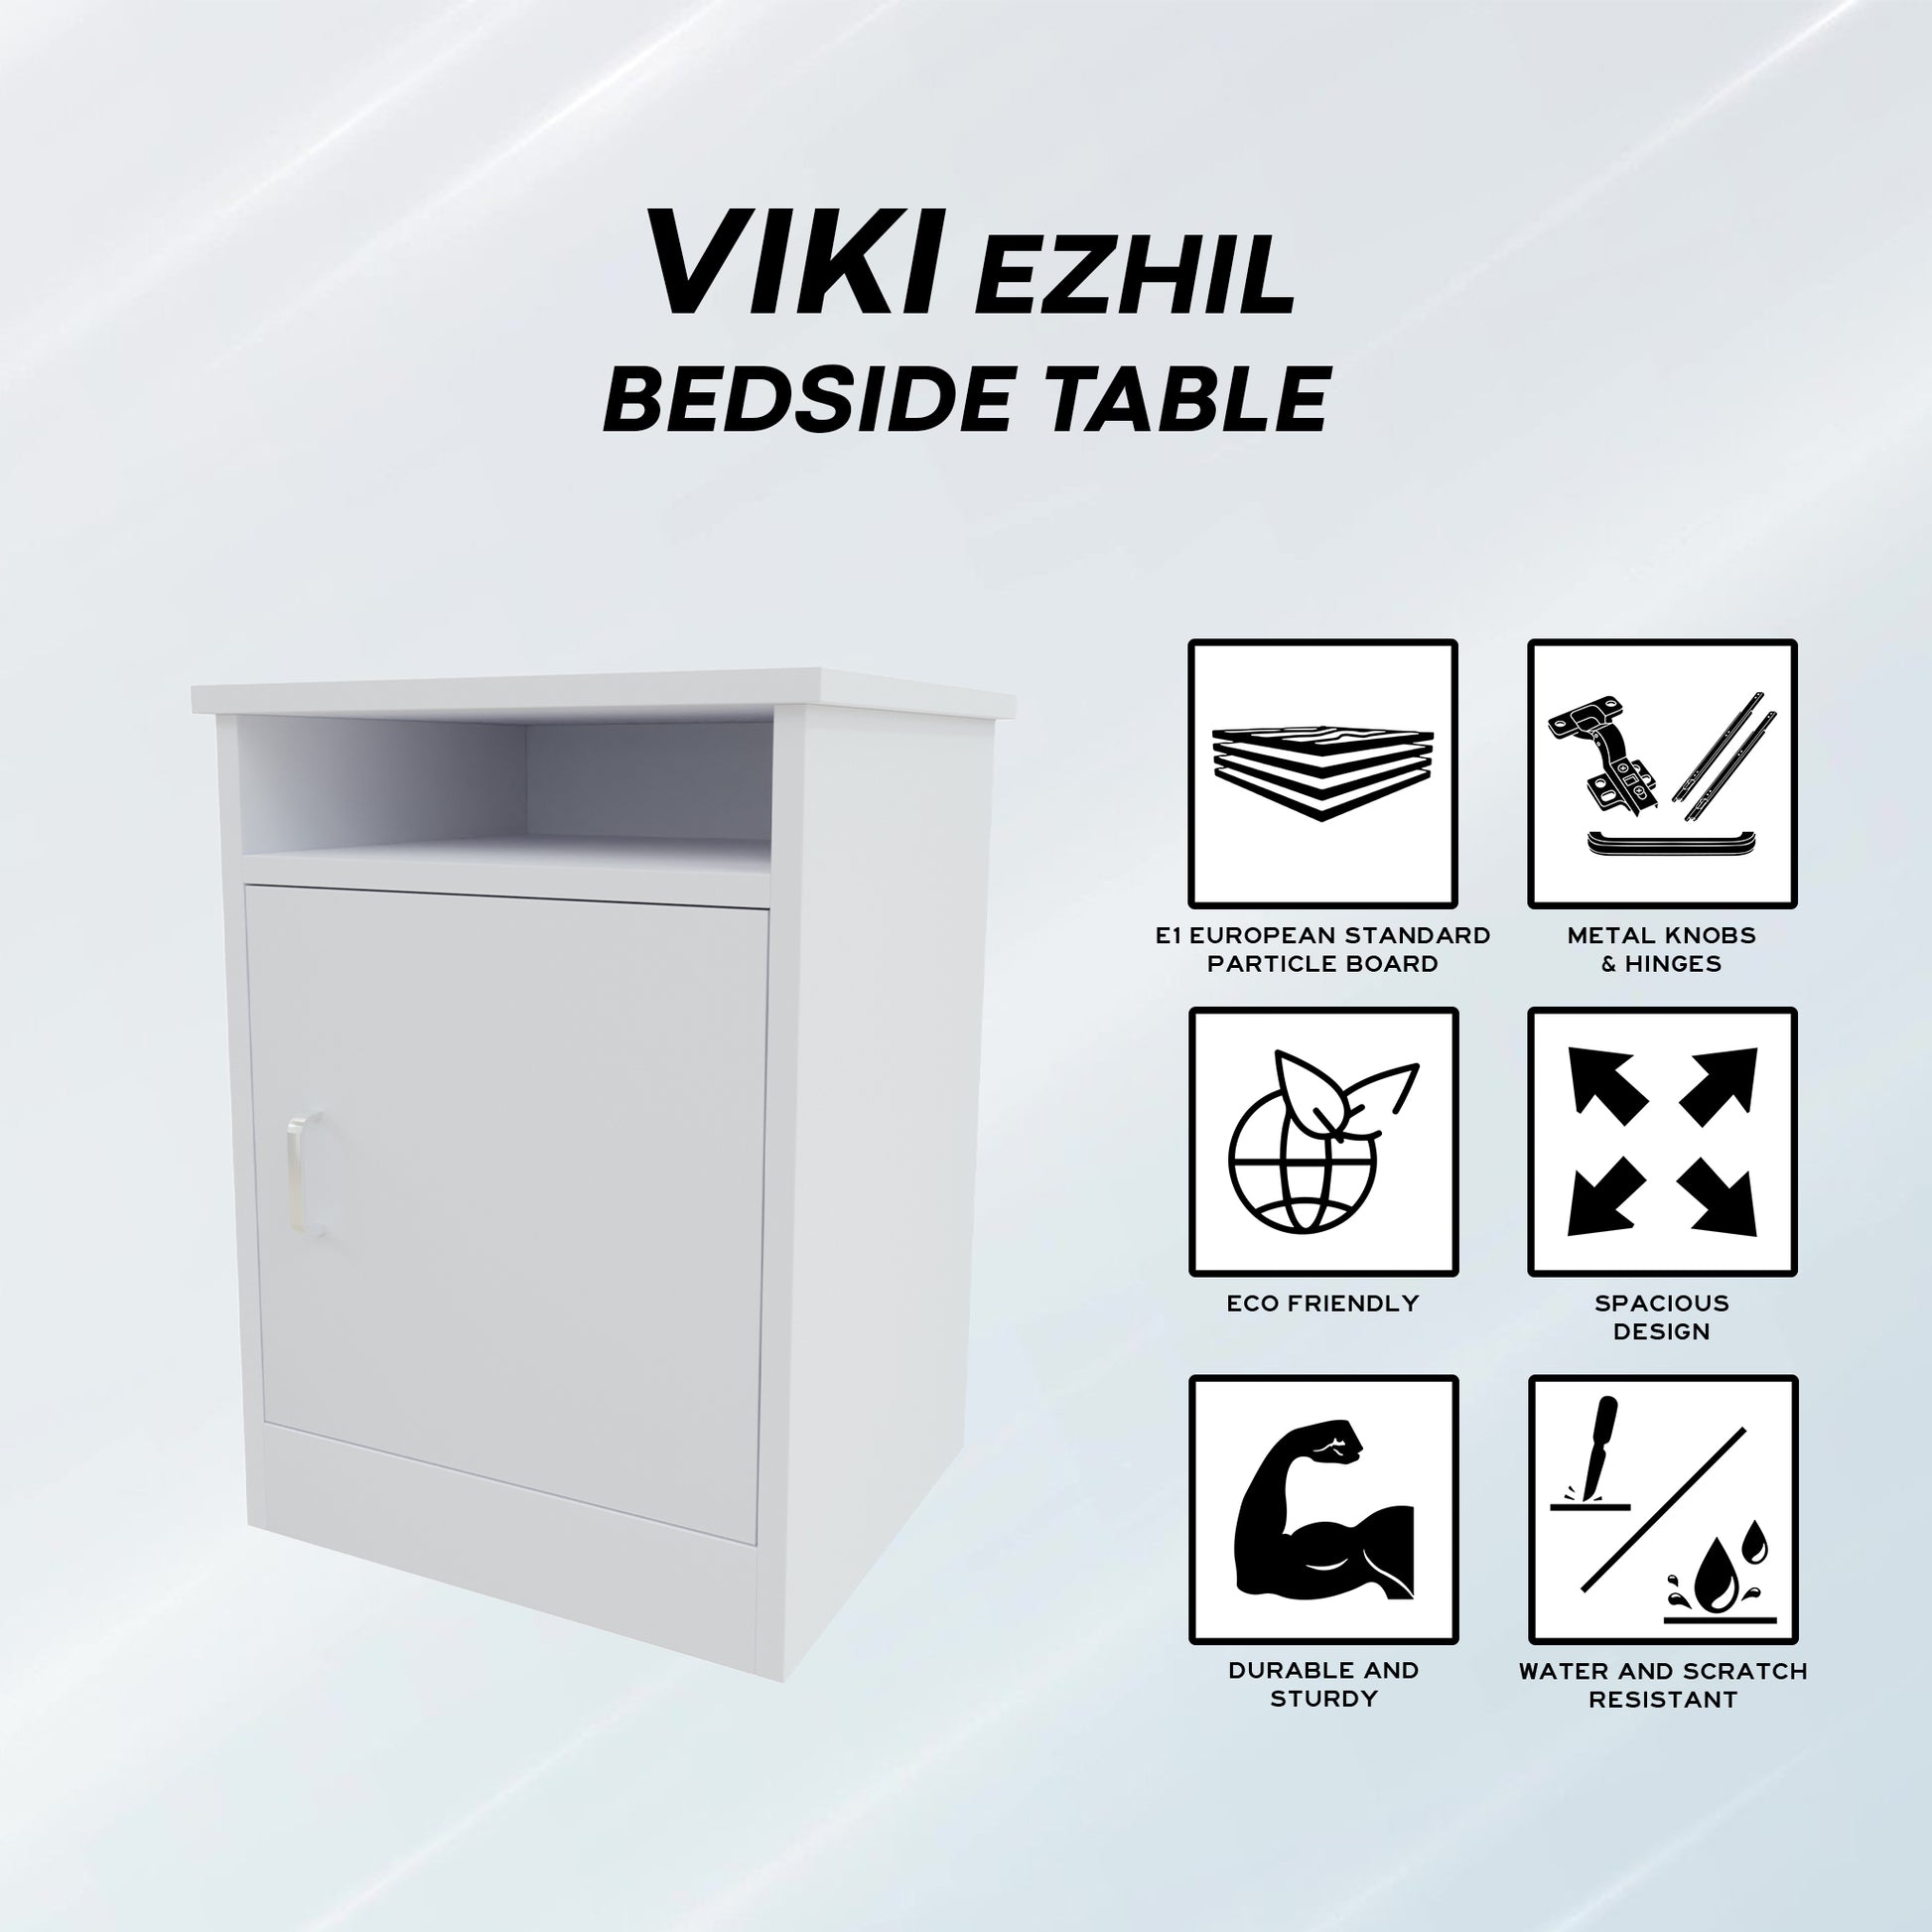 EZHIL| Bedside table, Door Nightstands VIKI FURNITURE   